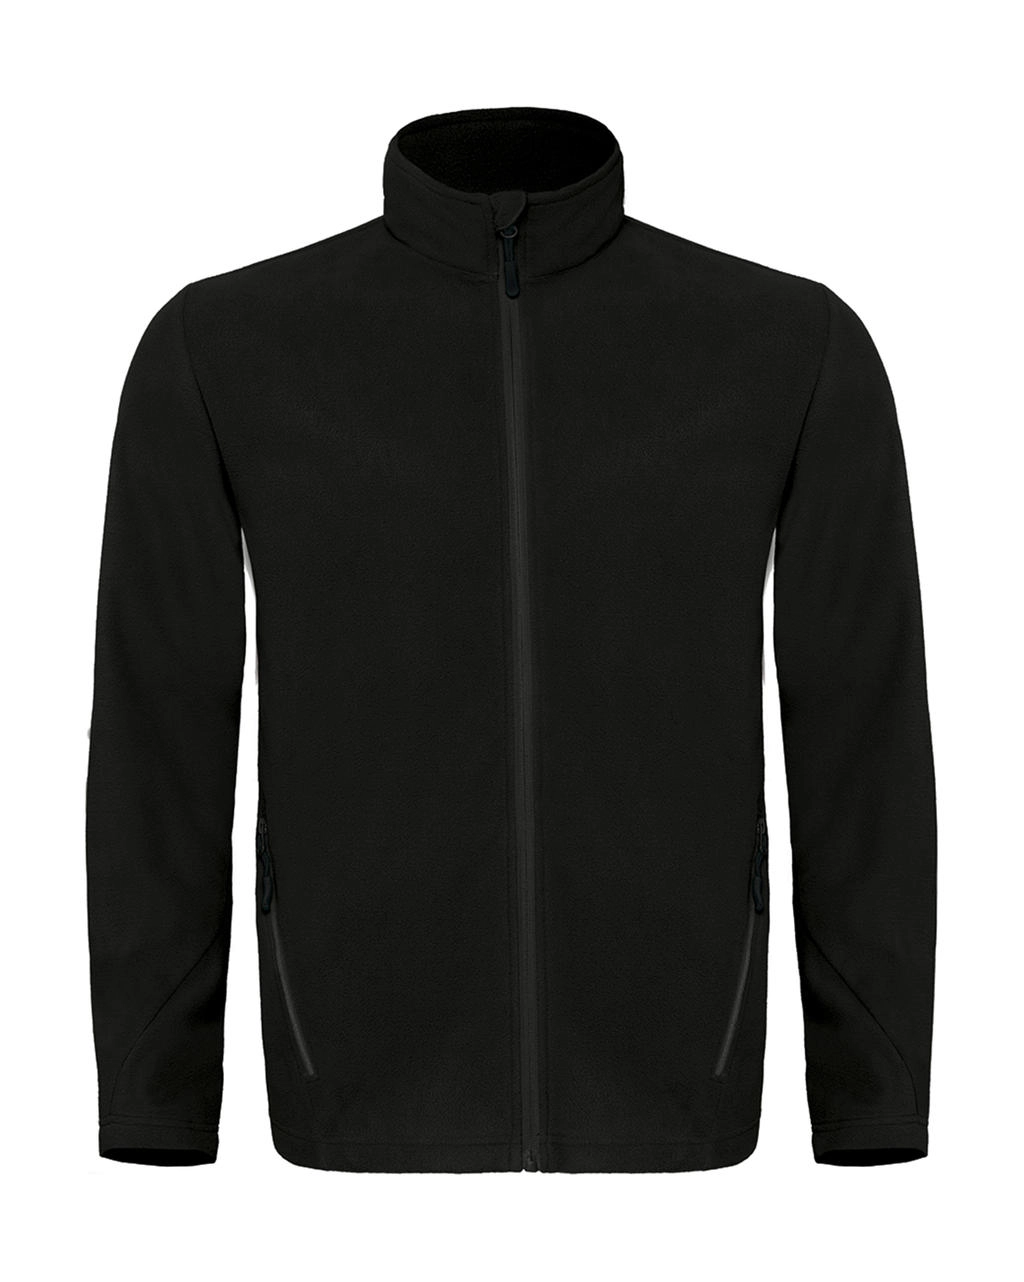 Coolstar/men Fleece Full Zip  zum Besticken und Bedrucken in der Farbe Black mit Ihren Logo, Schriftzug oder Motiv.